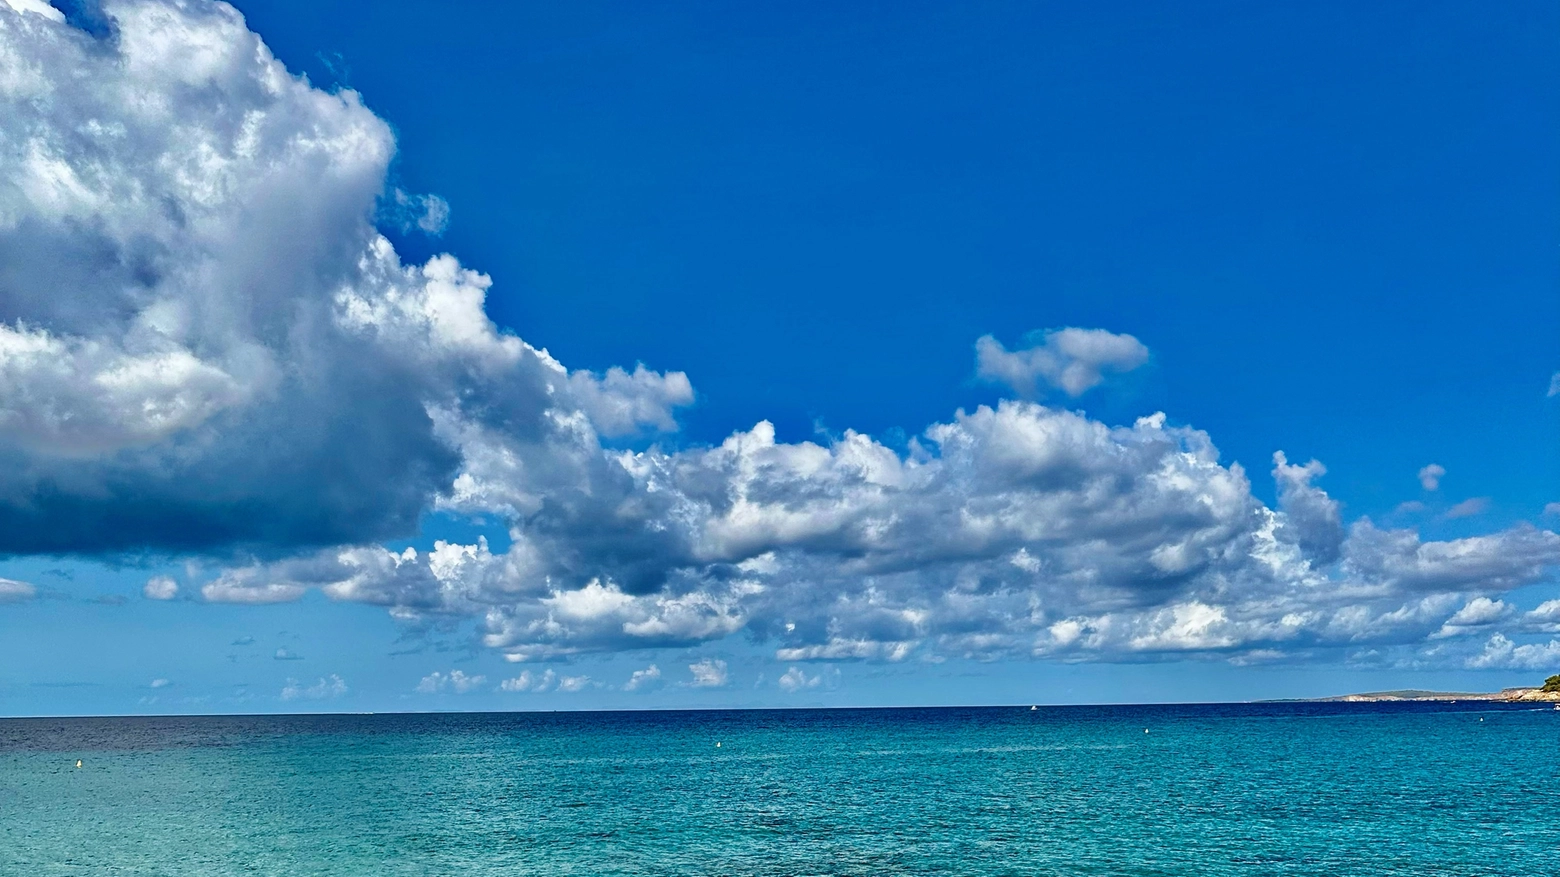 La piccola perla dell’arcipelago spagnolo, riconosciuta "Riserva della biosfera" dall'UNESCO, da otto anni ha introdotto l’eco-tassa e ha detto no alla cementificazione selvaggia, puntando su un turismo slow e sulla bellezza della natura